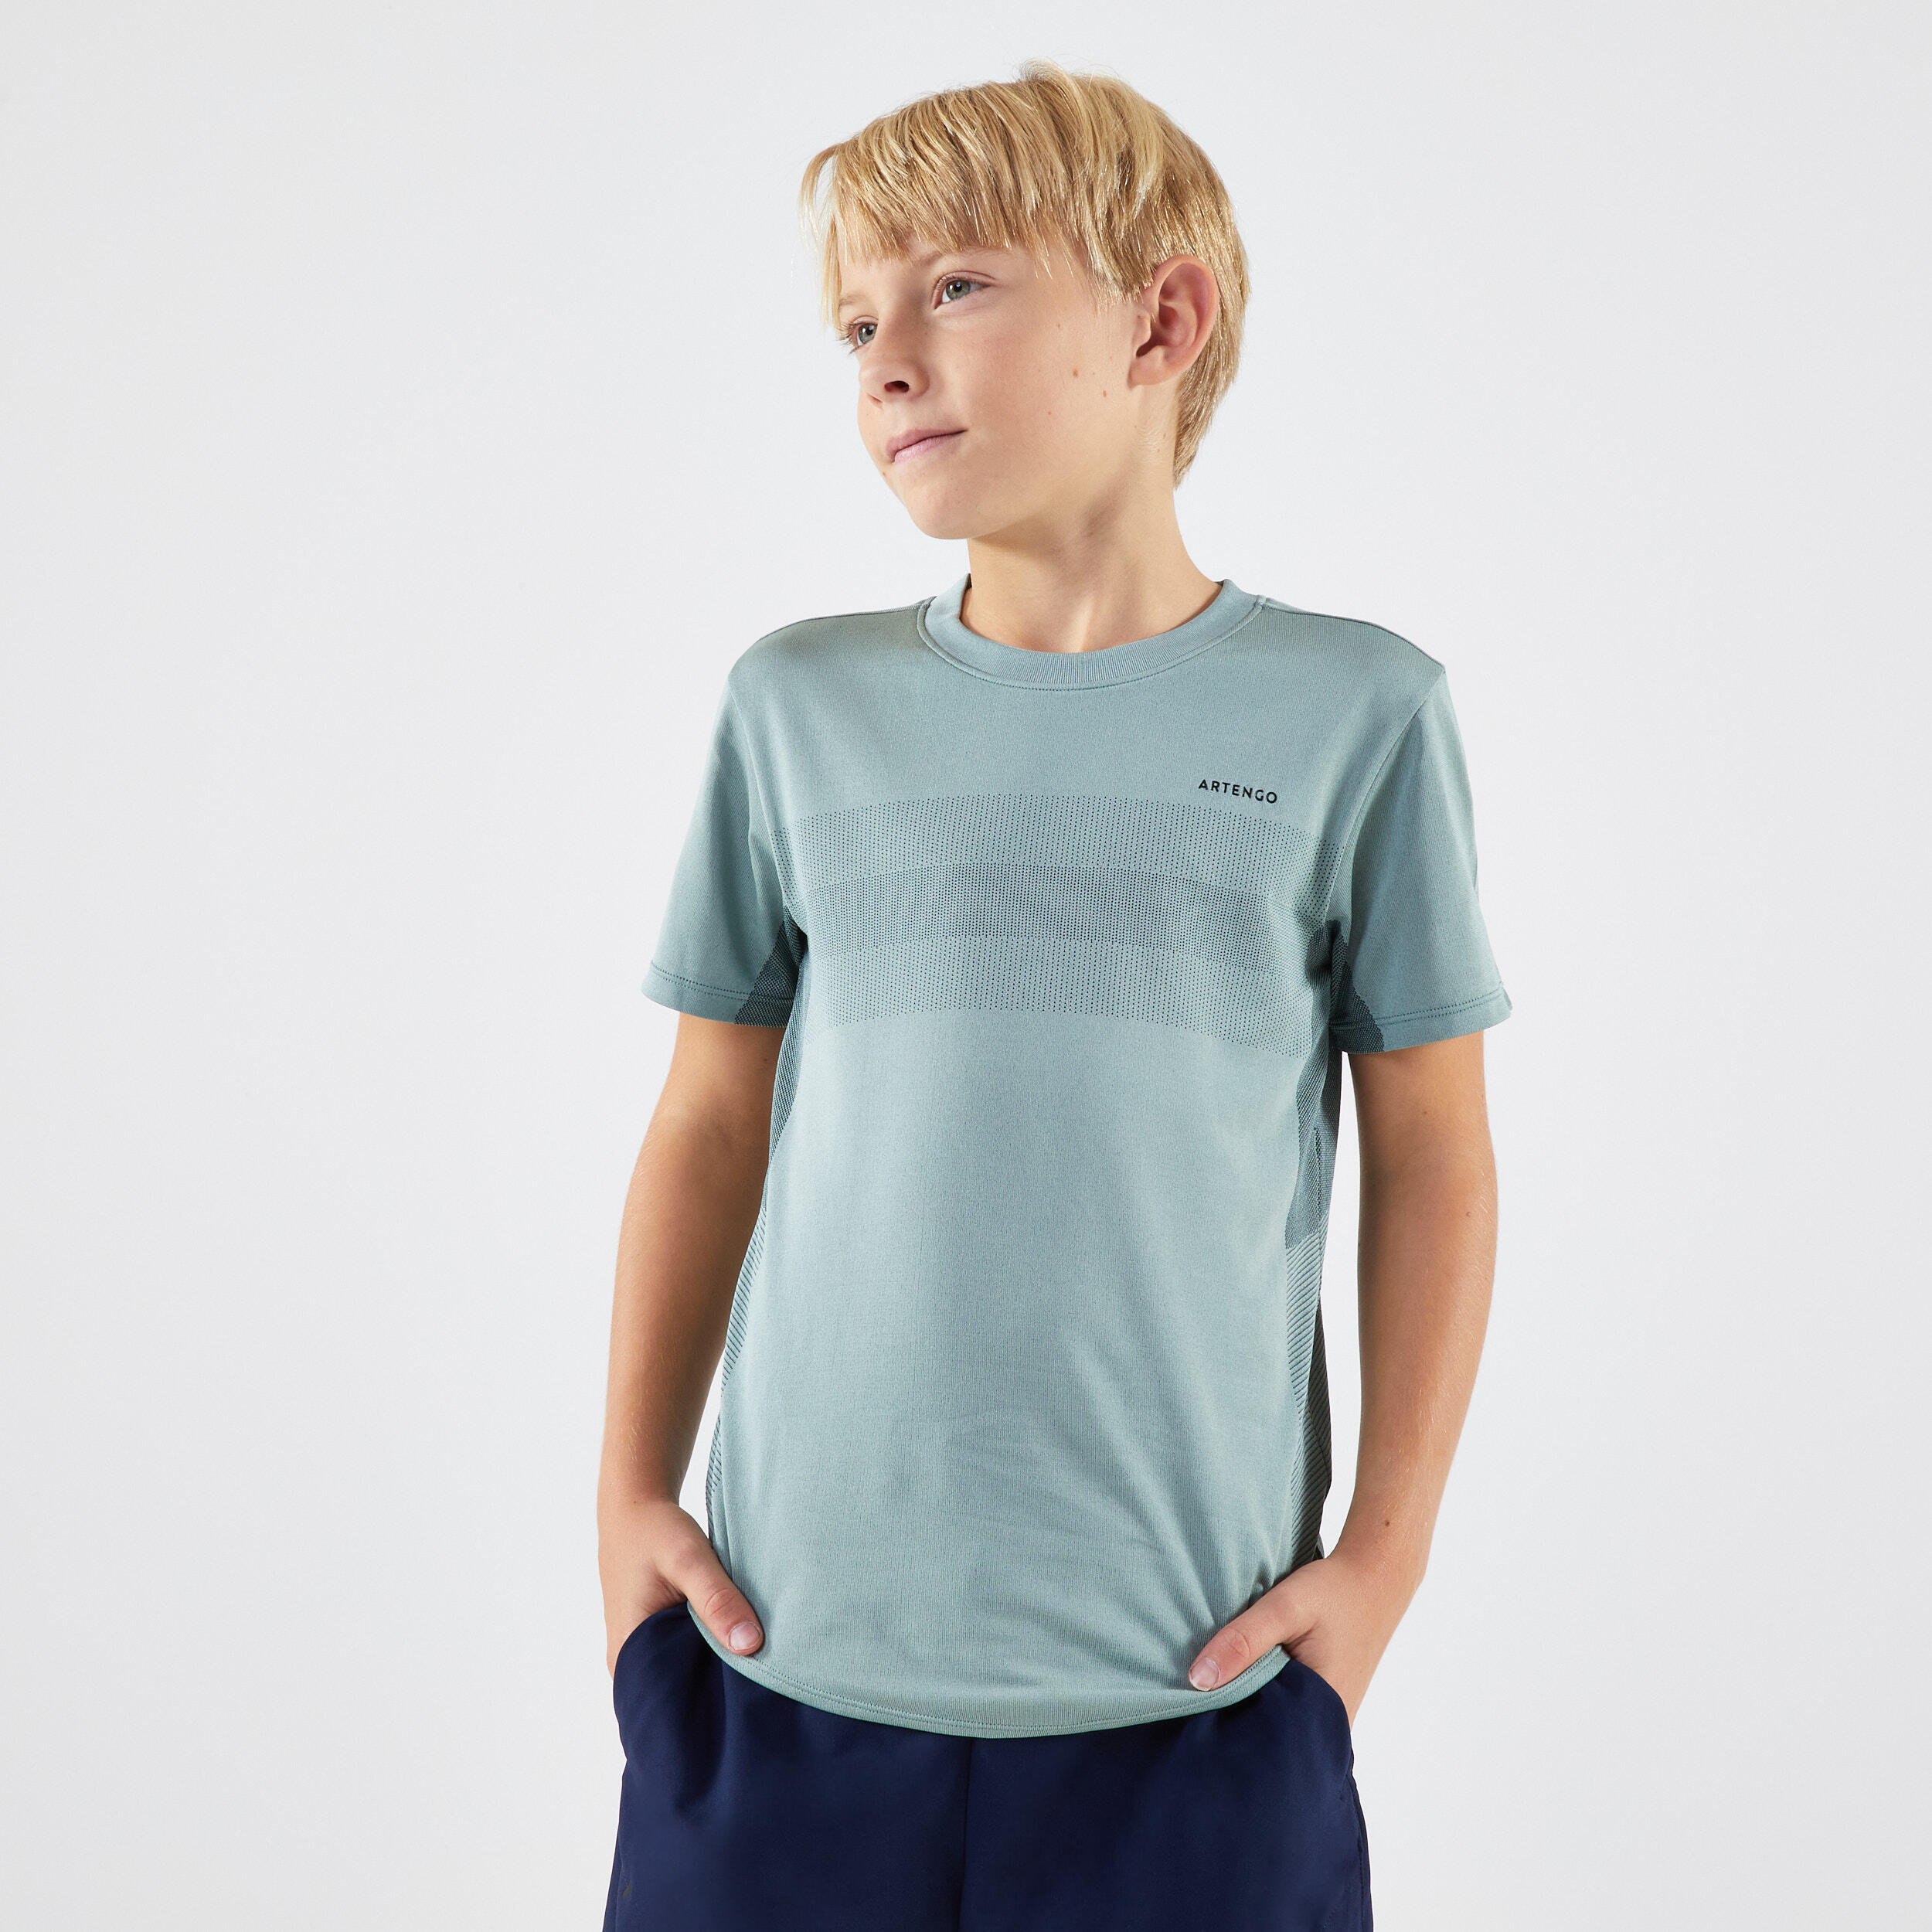 Kids' Tennis T-Shirt Light - Frozen Green 2/7